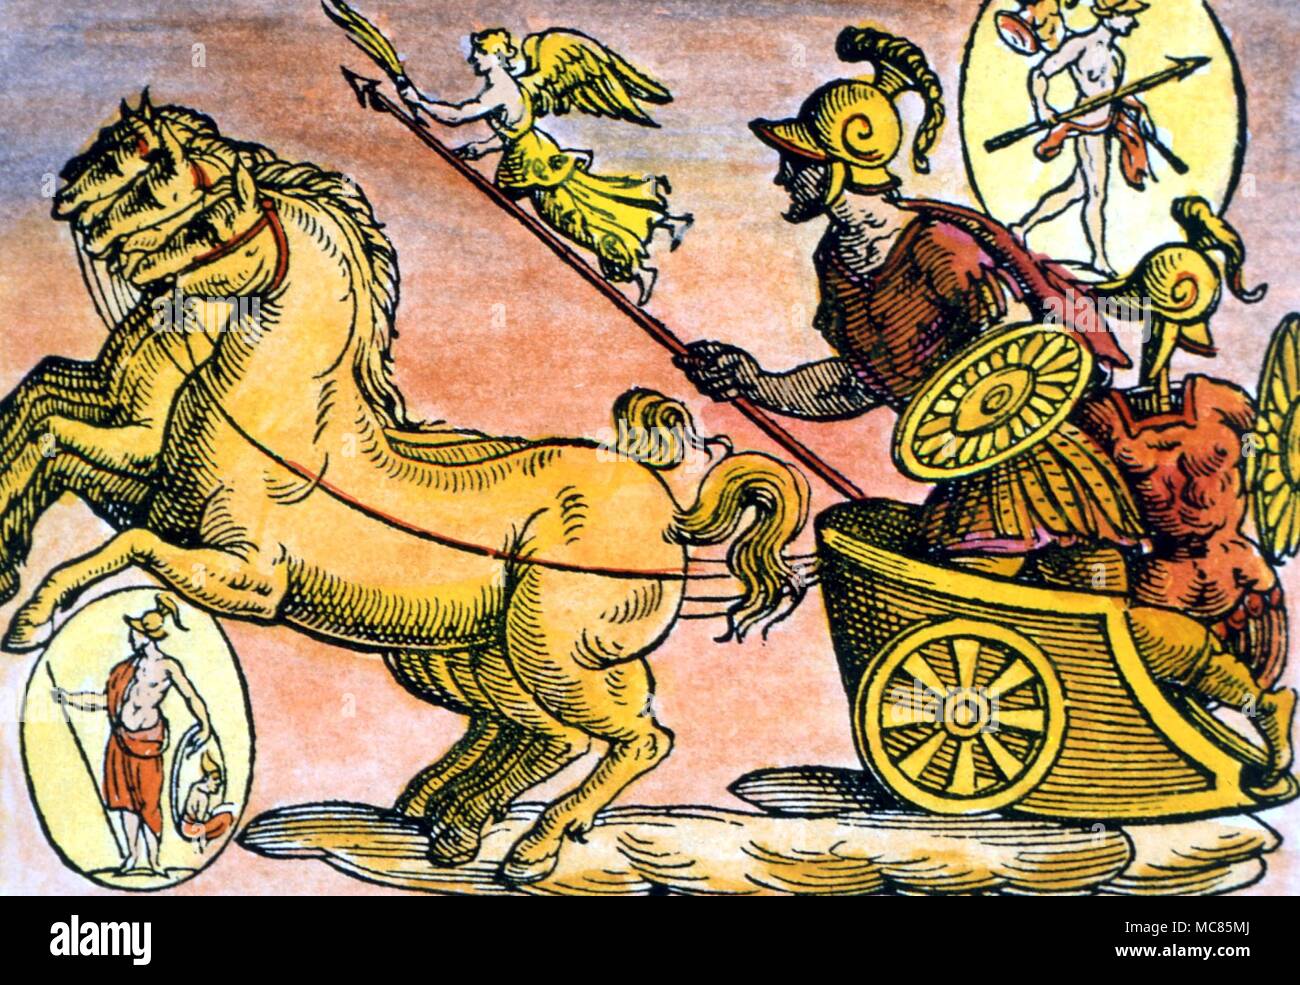 Der griechischen Mythologie der Gott Mars, mit seinem Speer von Sieg gedrängt, in seinem Pferd-Wagen gezogen. Von Natalis Comitis, 'Mythologiae, Lib. V', 17. Jahrhundert edition. privage Sammlung Stockfoto